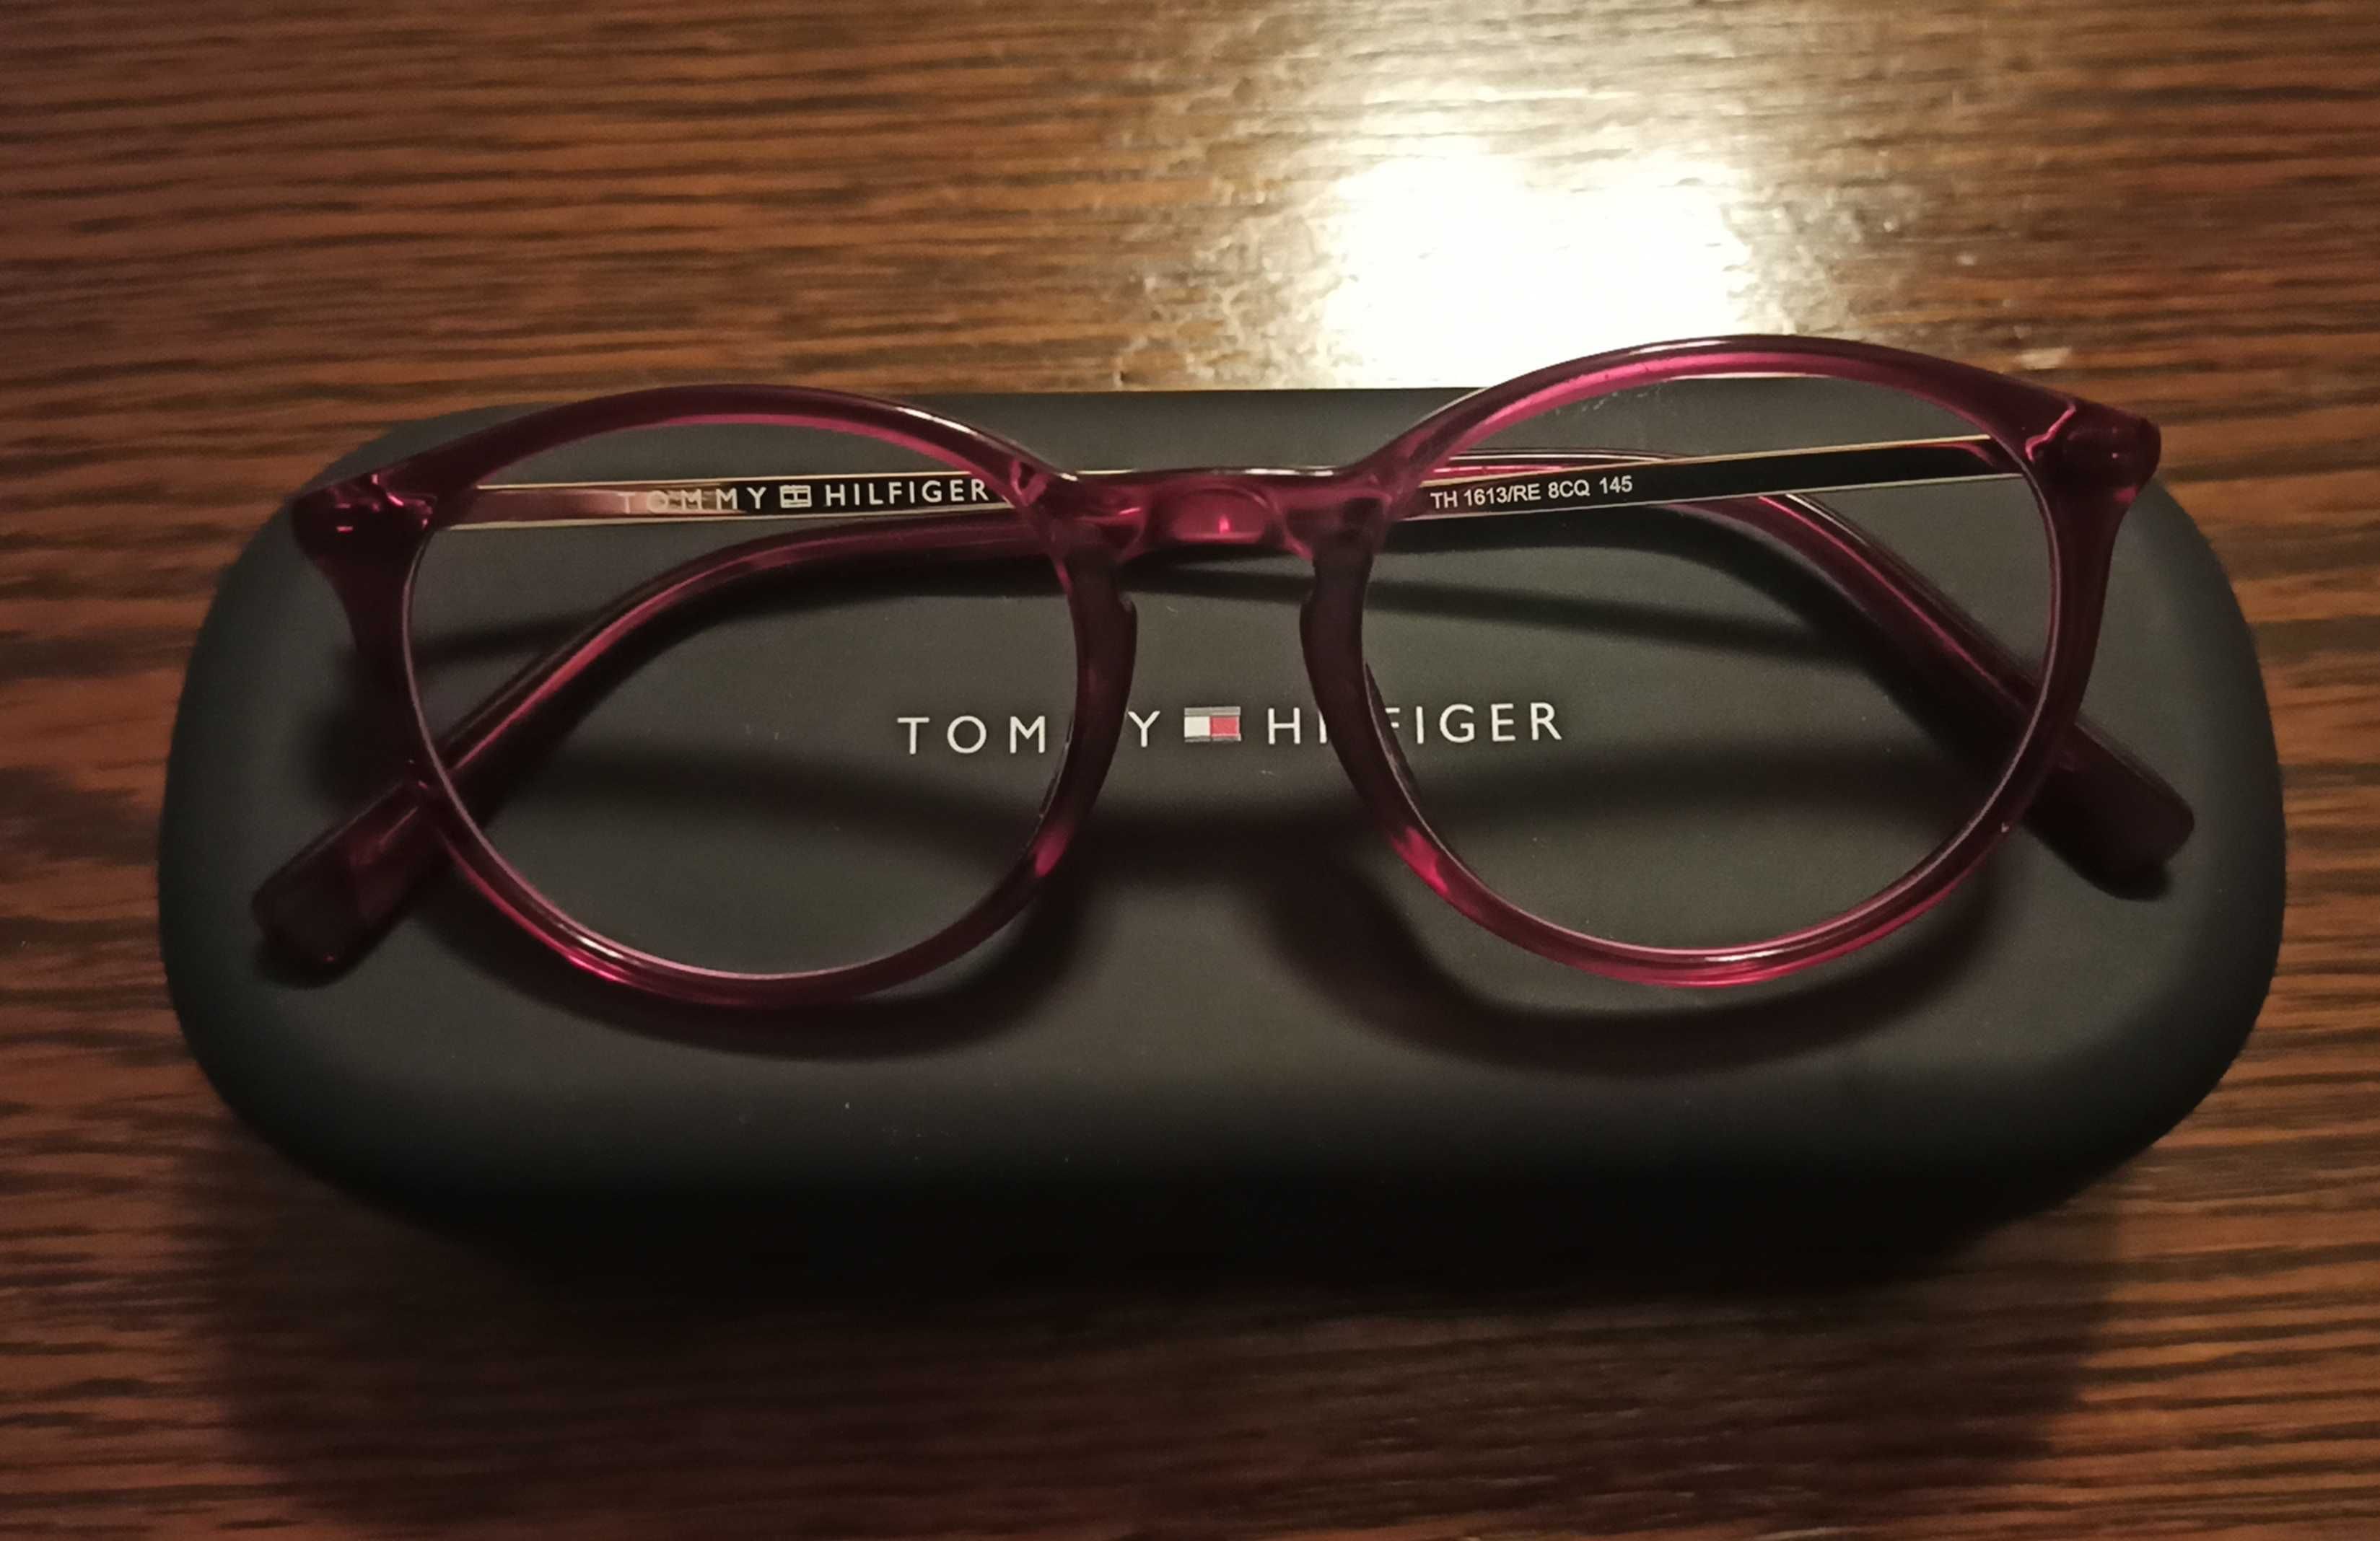 Okulary progresywne, oprawki Tommy. Hilfiger